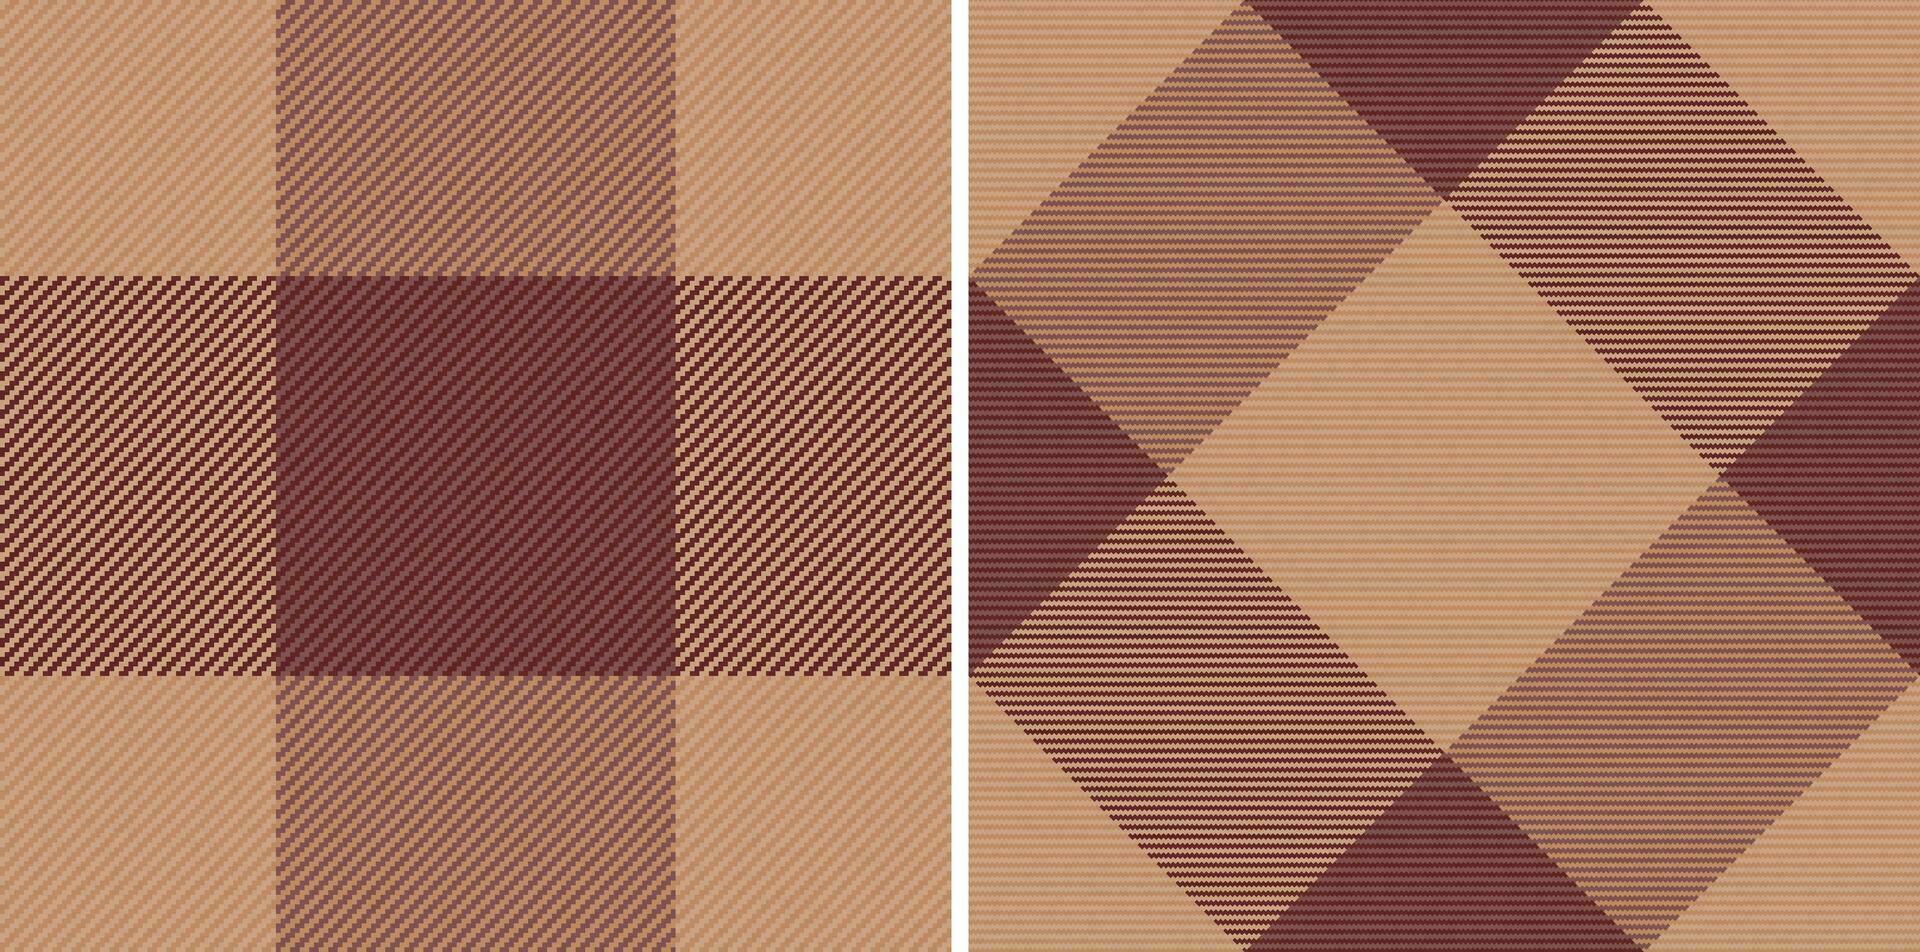 achtergrond naadloos plaid van textiel patroon Schotse ruit met een controleren kleding stof structuur vector. vector